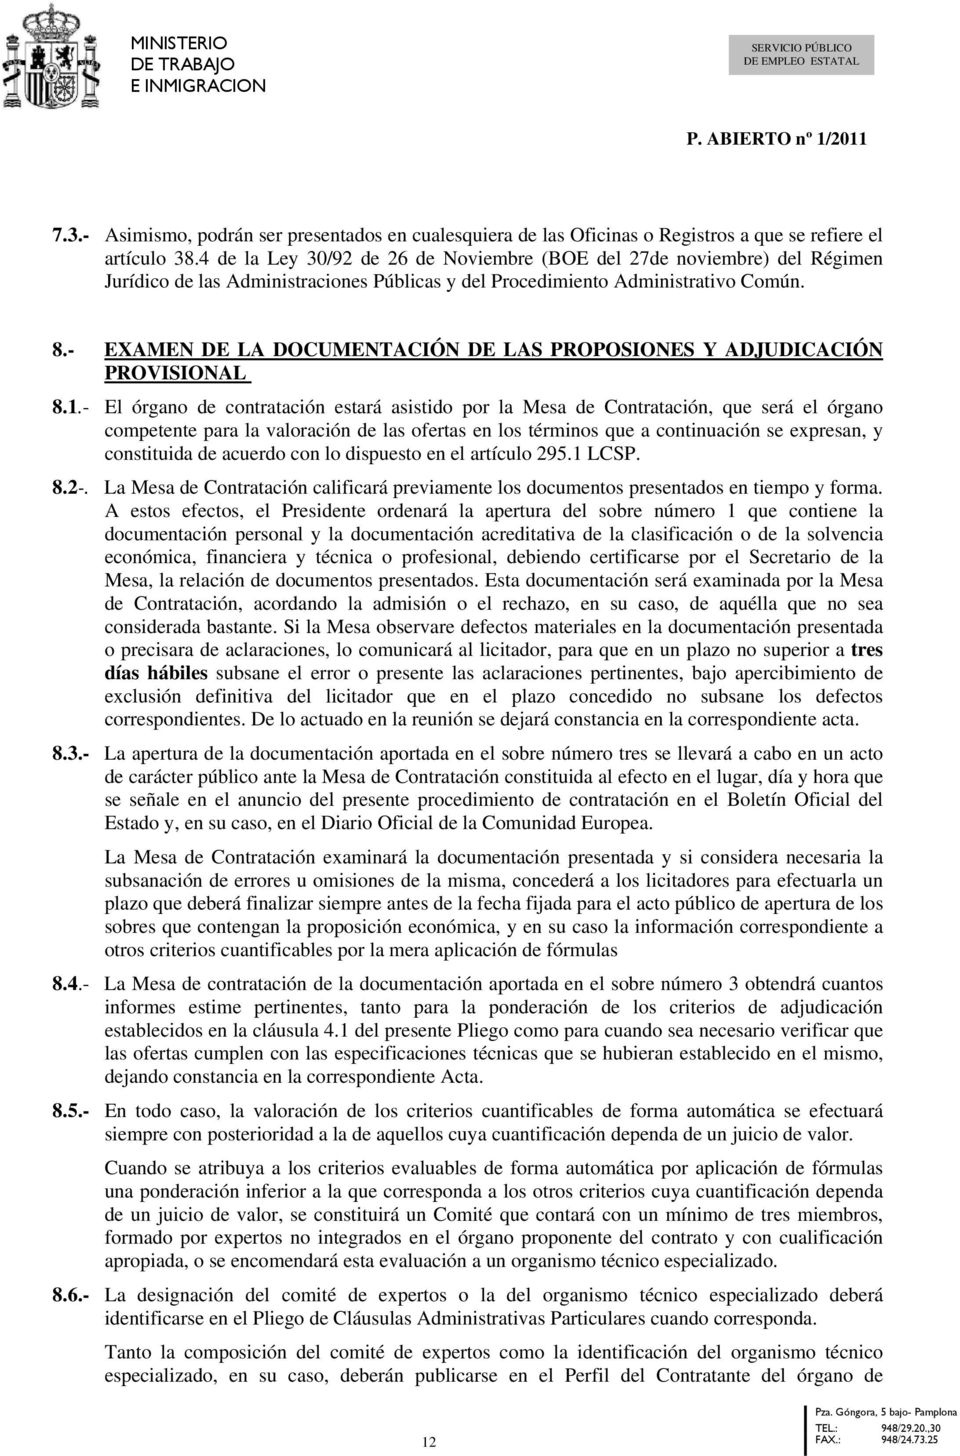 - EXAMEN DE LA DOCUMENTACIÓN DE LAS PROPOSIONES Y ADJUDICACIÓN PROVISIONAL 8.1.